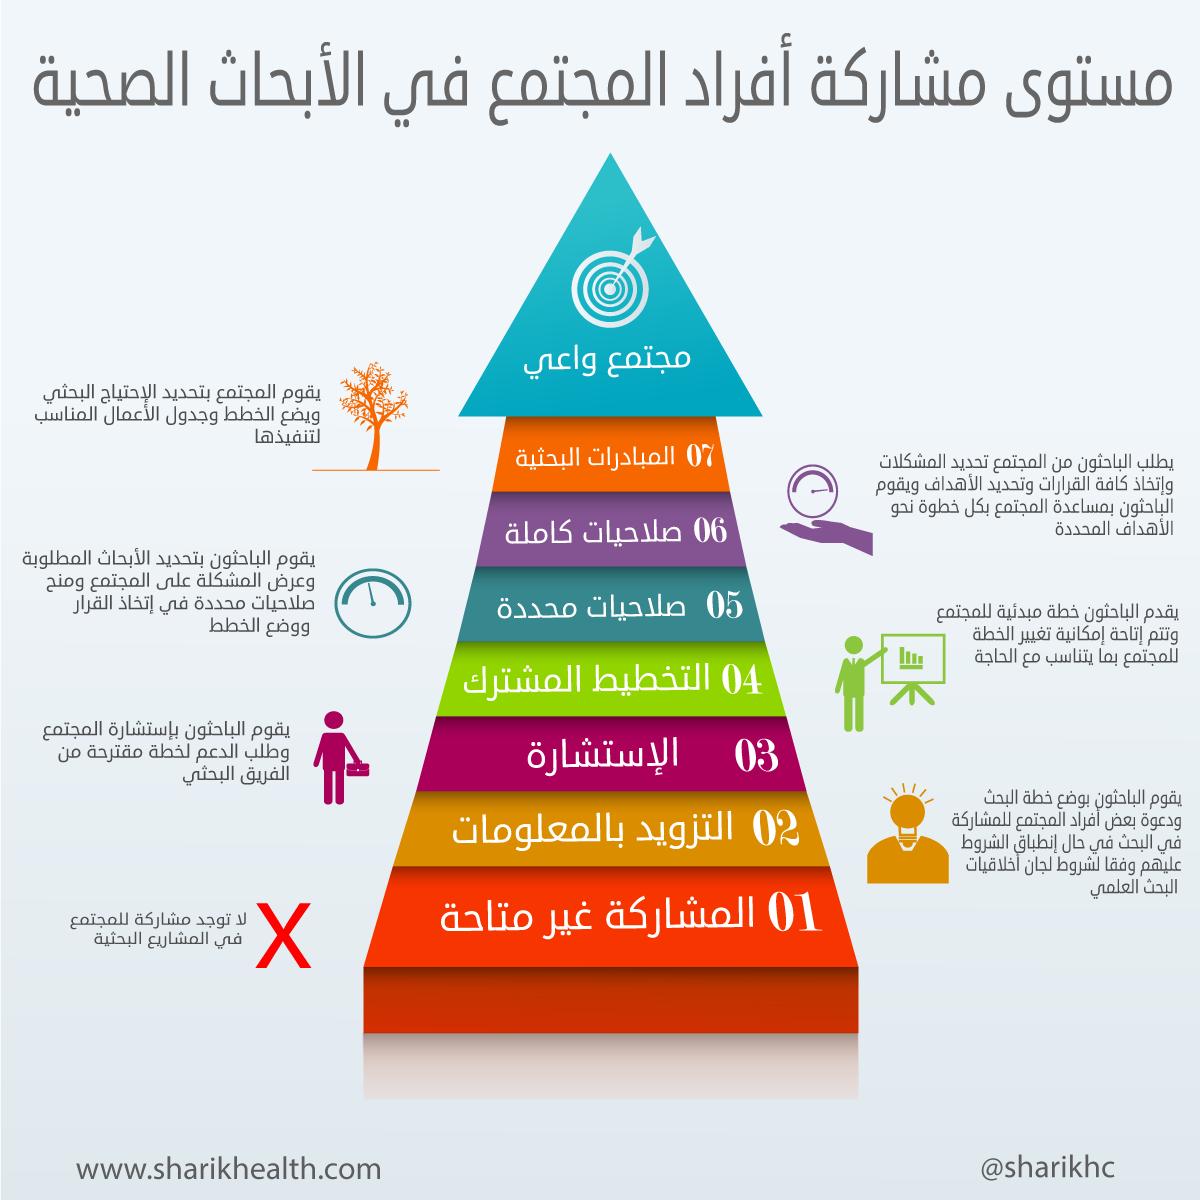 دراسة تكشف عزوف السعوديات عن المشاركة في أبحاث القضايا المجتمعية